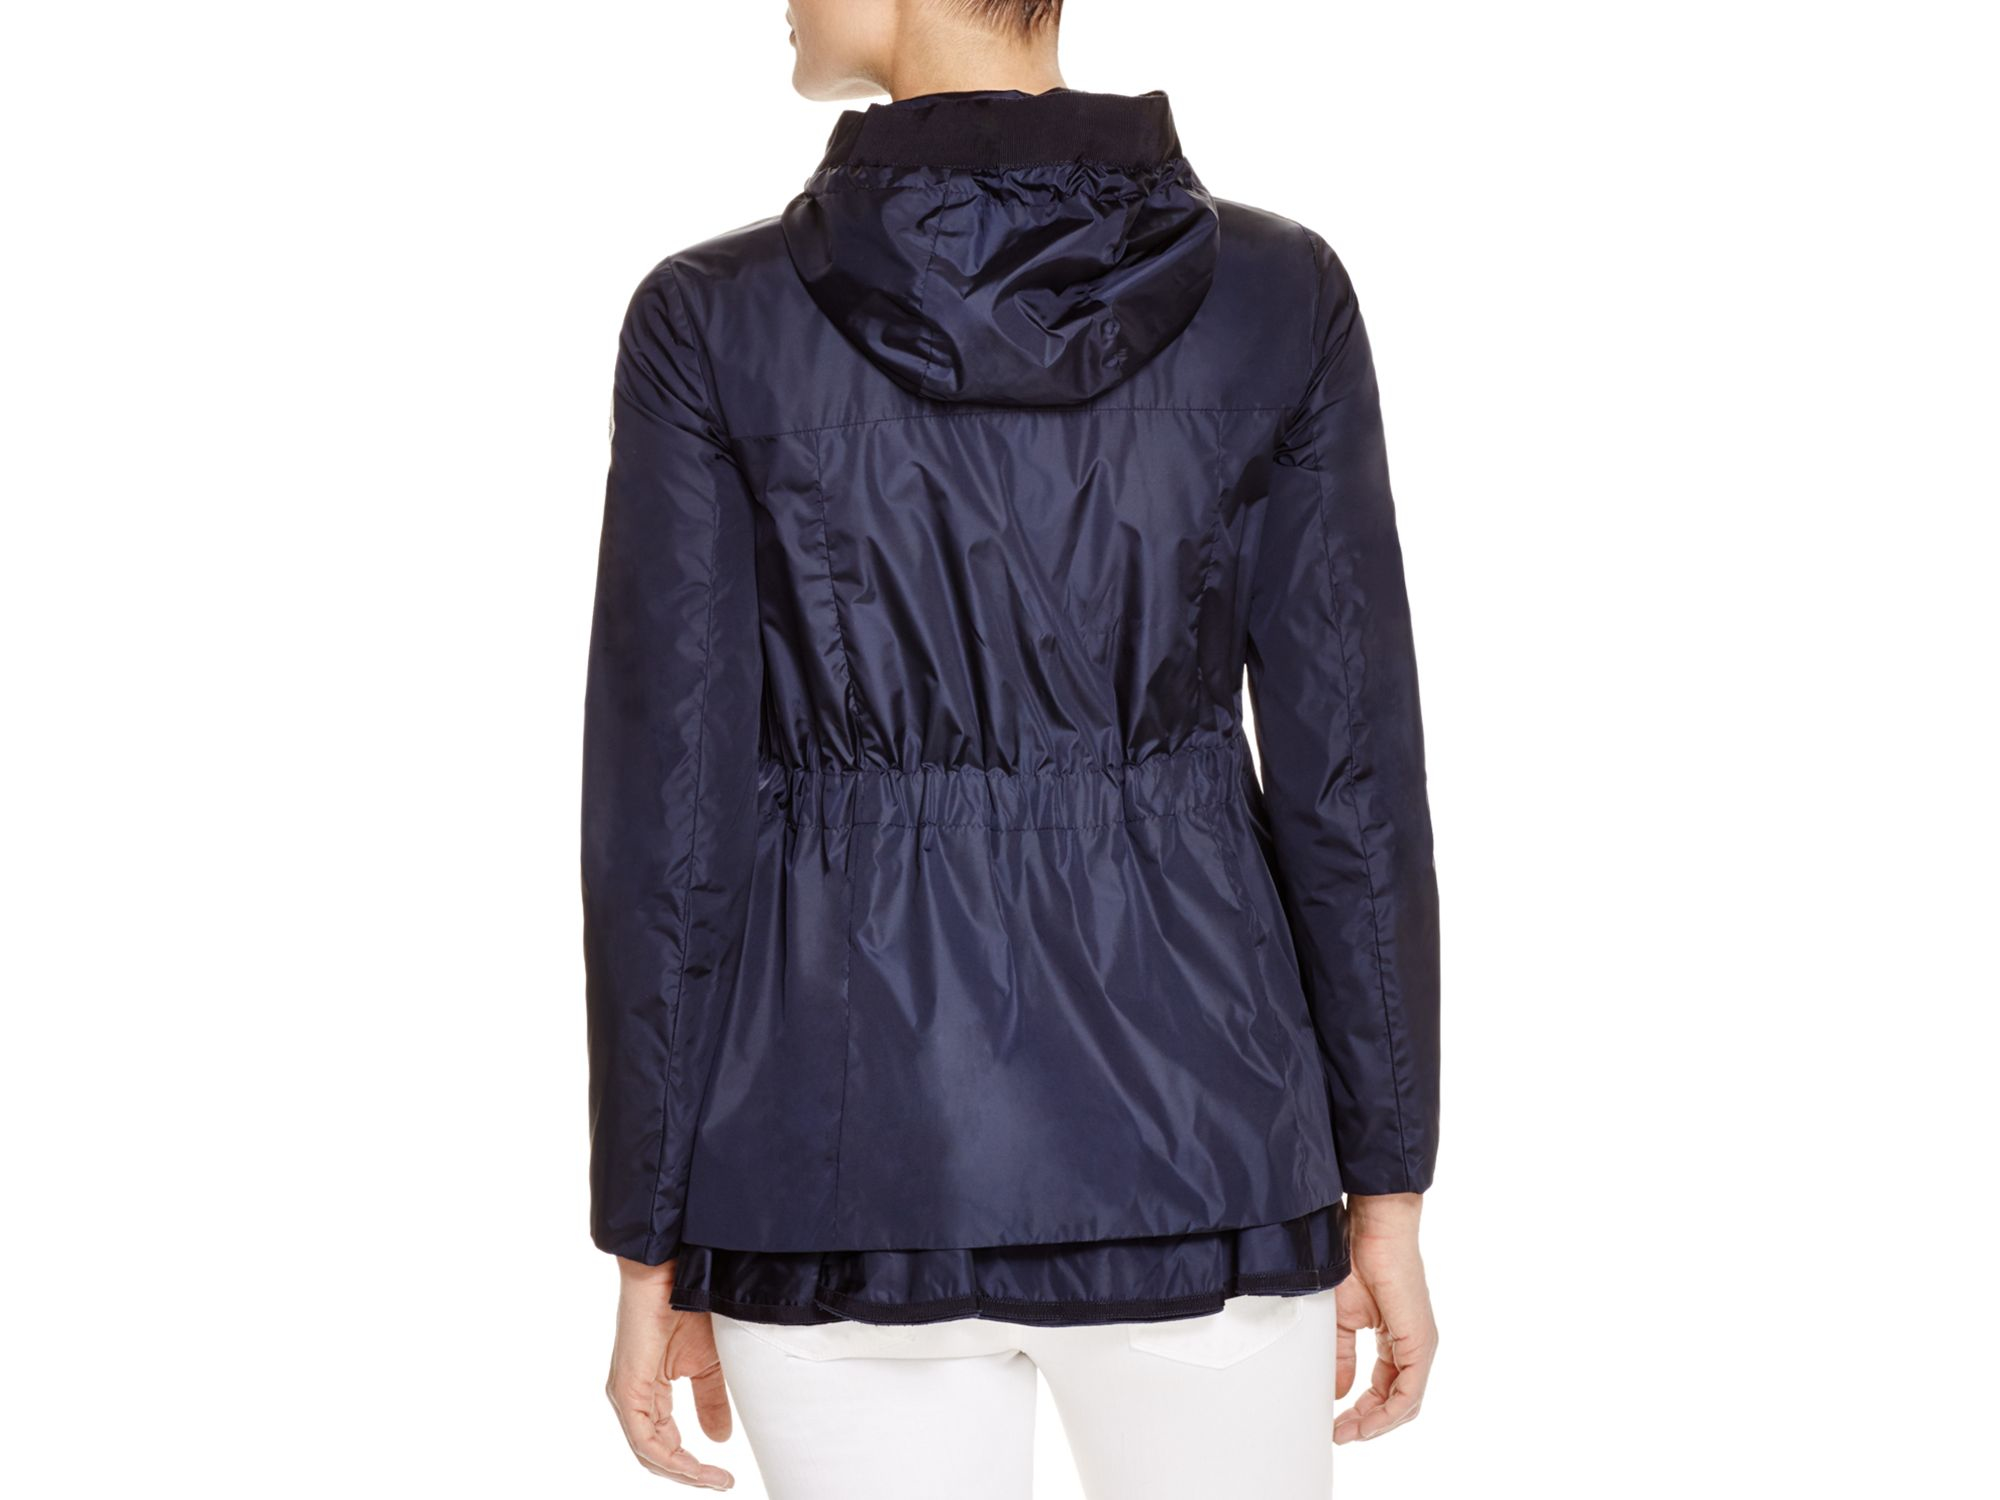 Sale > moncler rain jacket women's > in stock